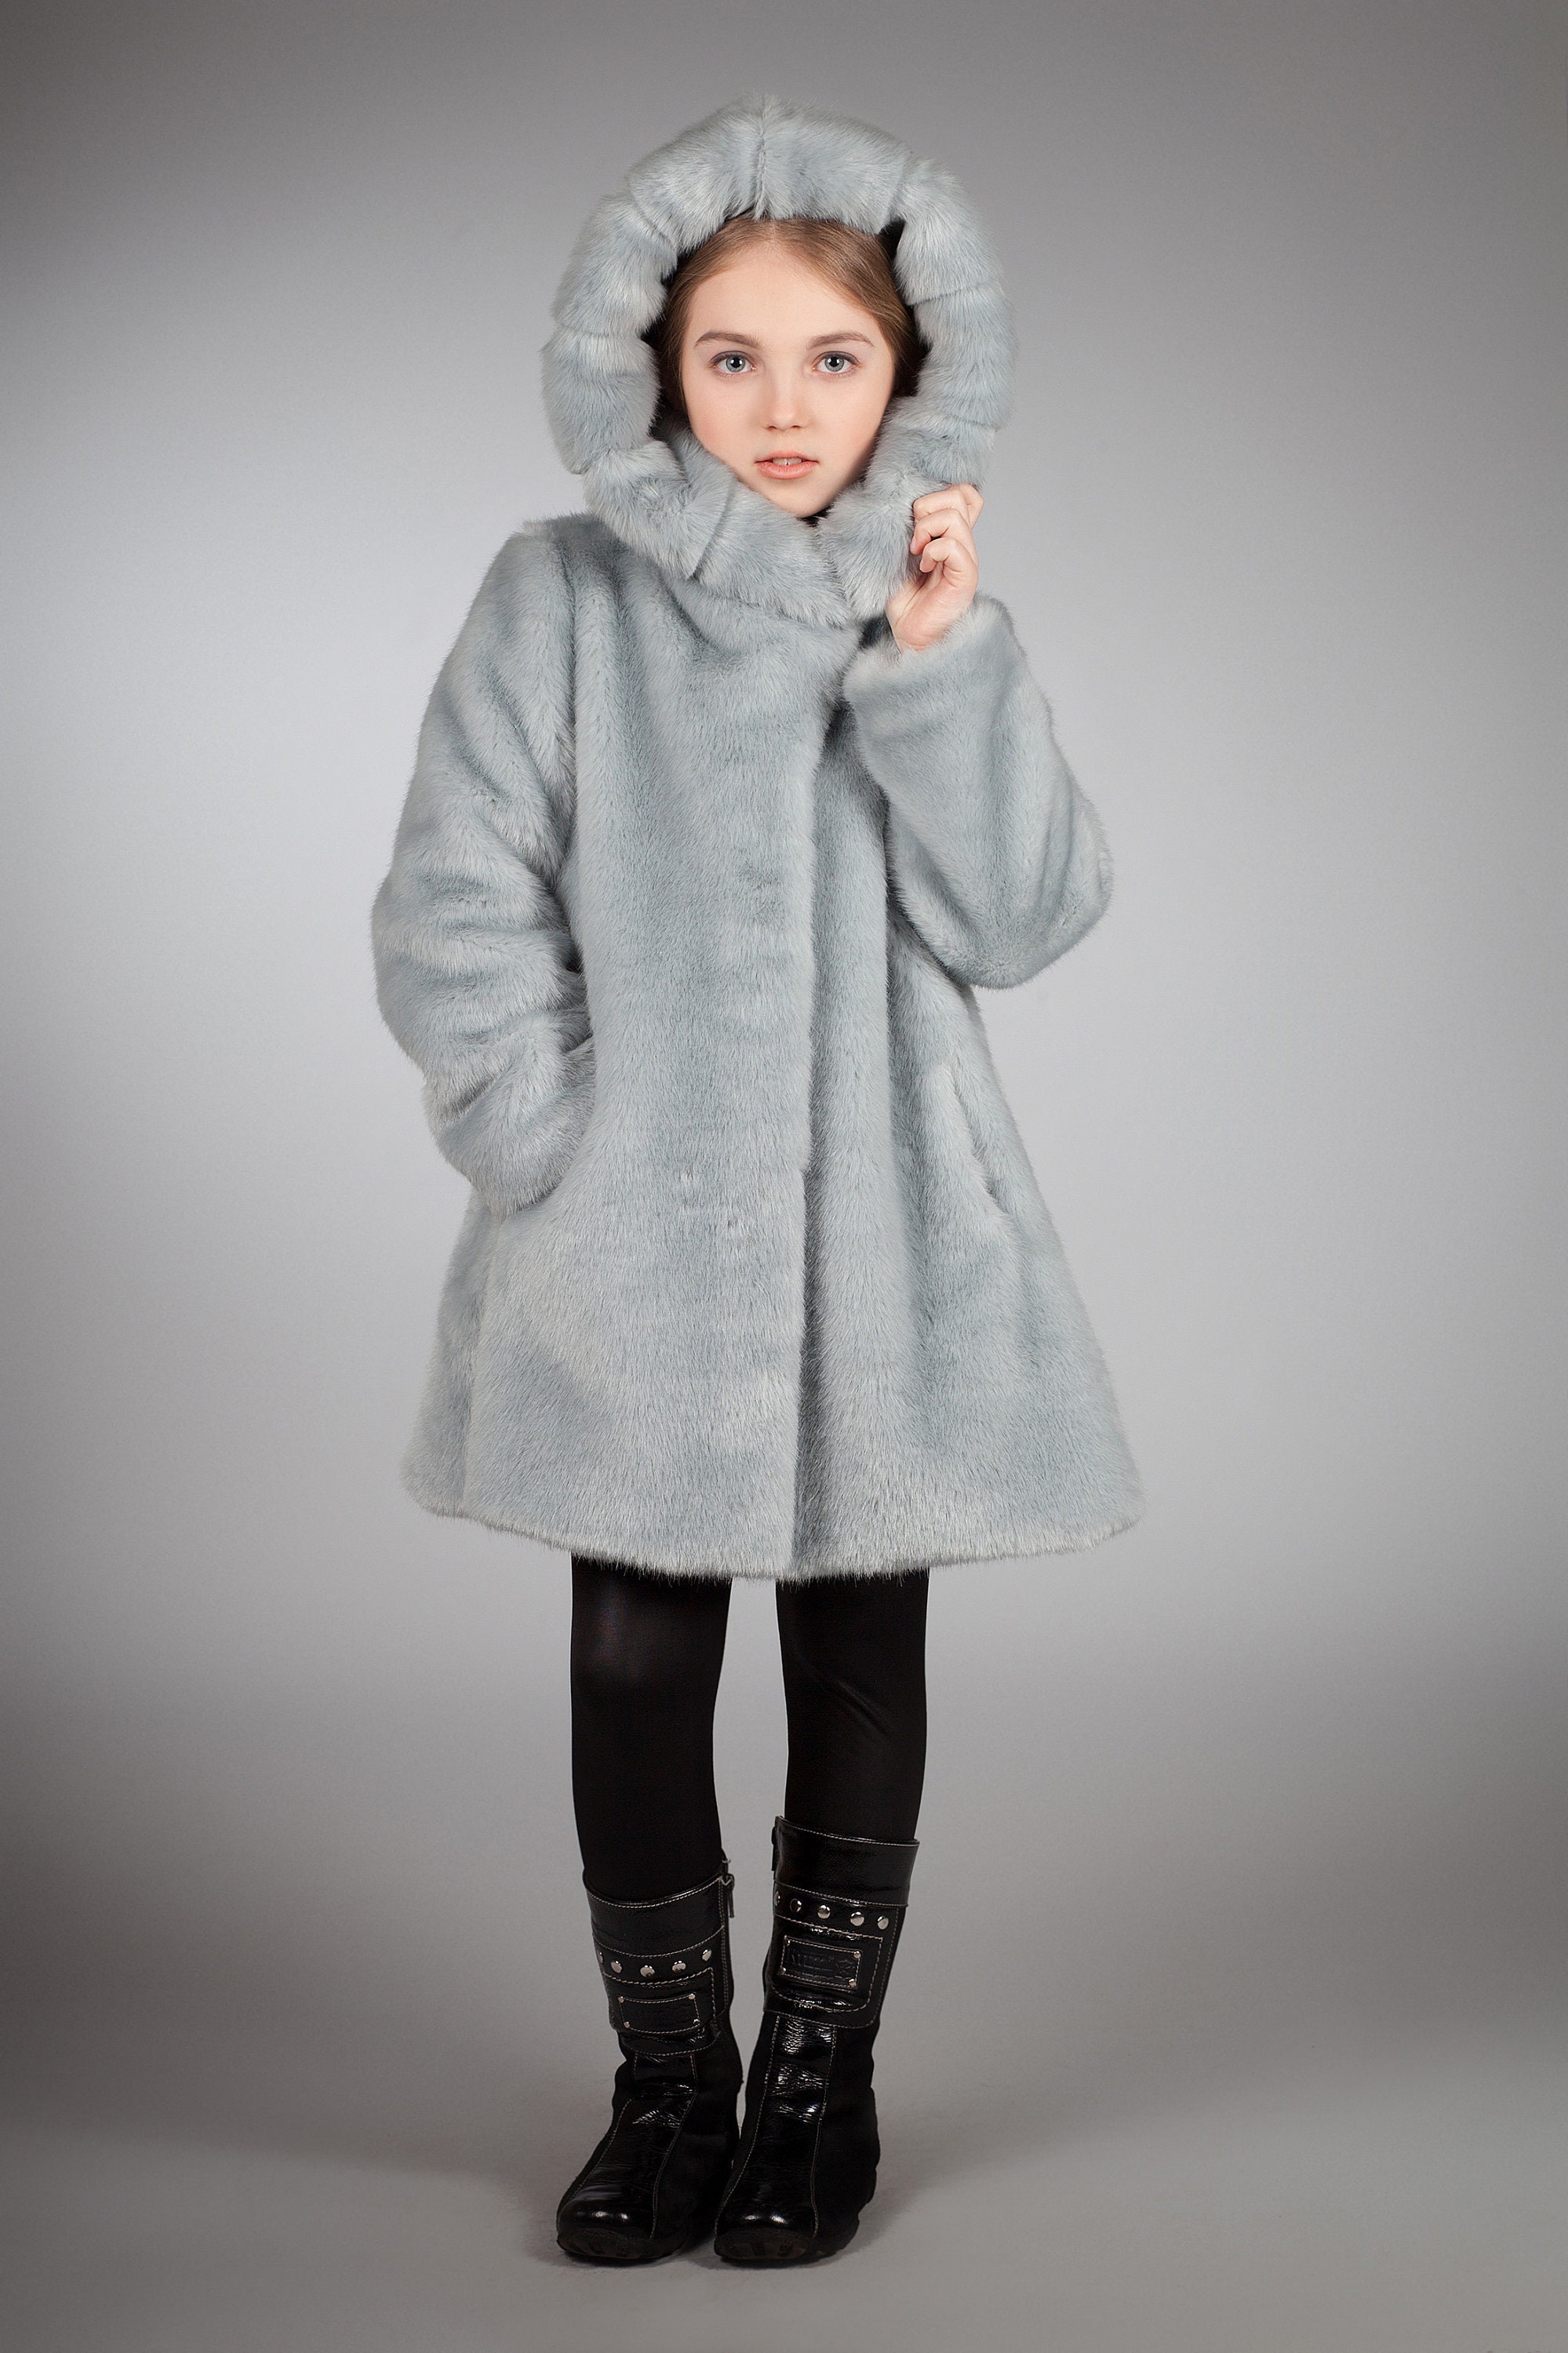 Kids coat. Fur kids coat. Winter kids coat. Gift for children. | Etsy